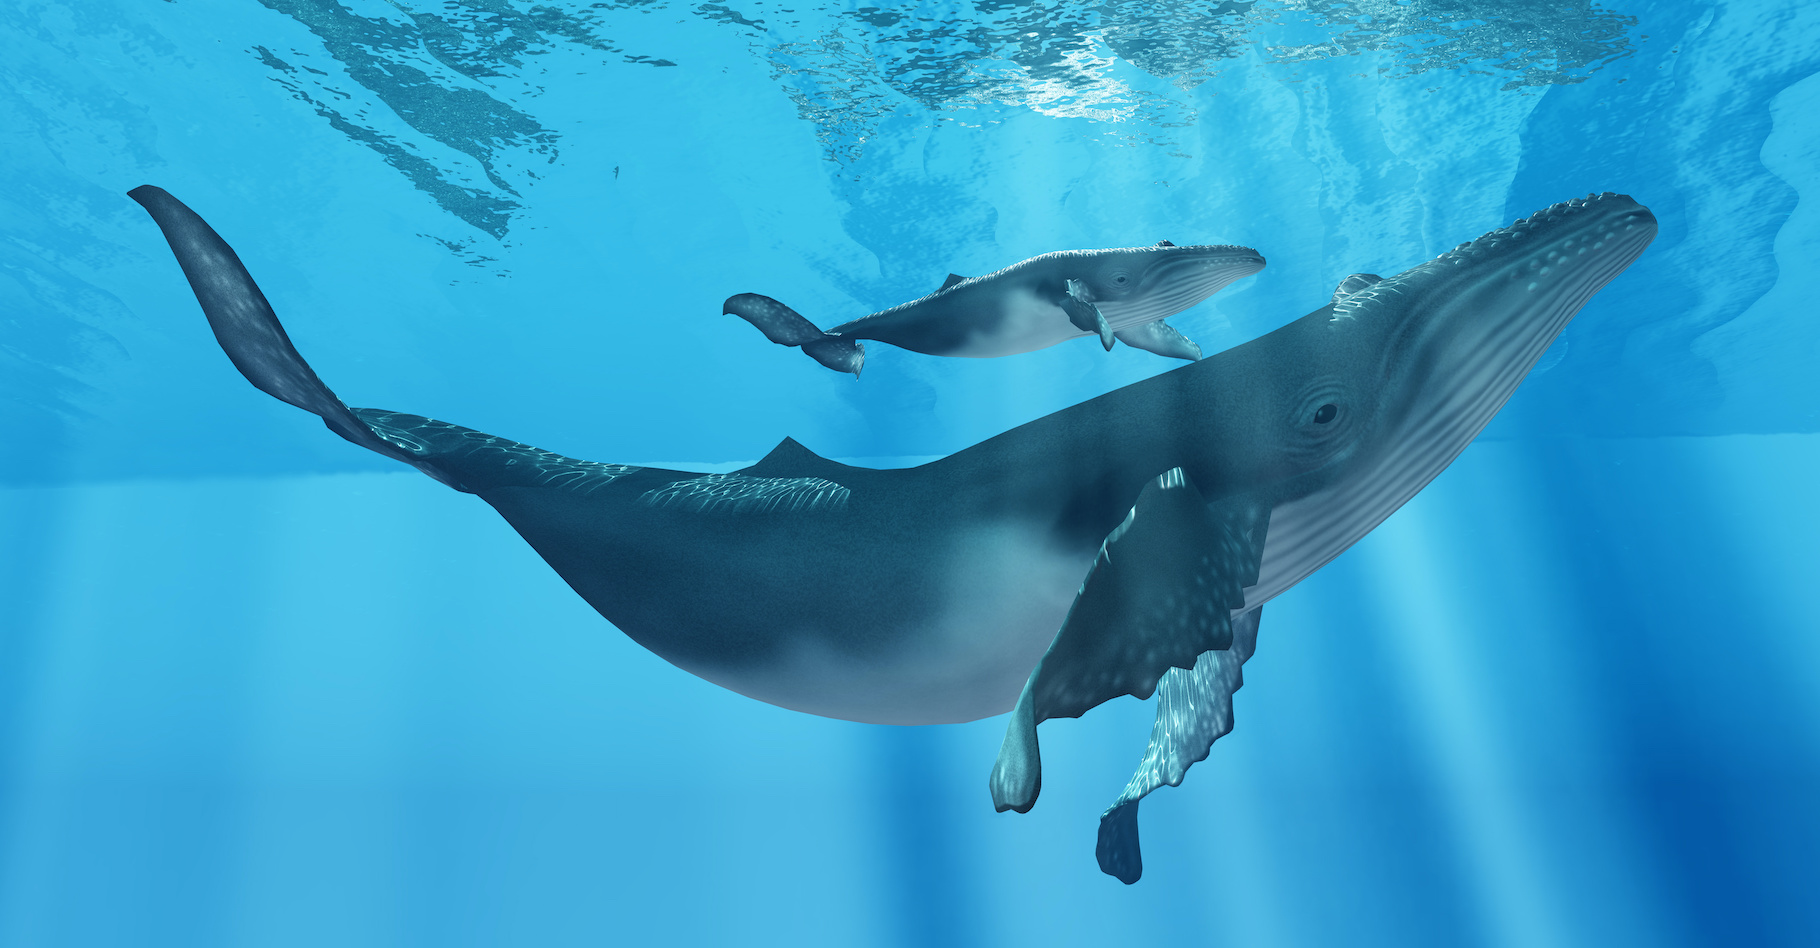 À l’âge adulte, une baleine à bosse peut peser jusqu’à 36 tonnes et mesure entre 15 et 20 mètres. Des données confirmées par les drones utilisés par les chercheurs de l’université d’Hawaï dans leur projet d’évaluation des comportements maternels chez les femelles baleines à bosse. © Catmando, Adobe Stock